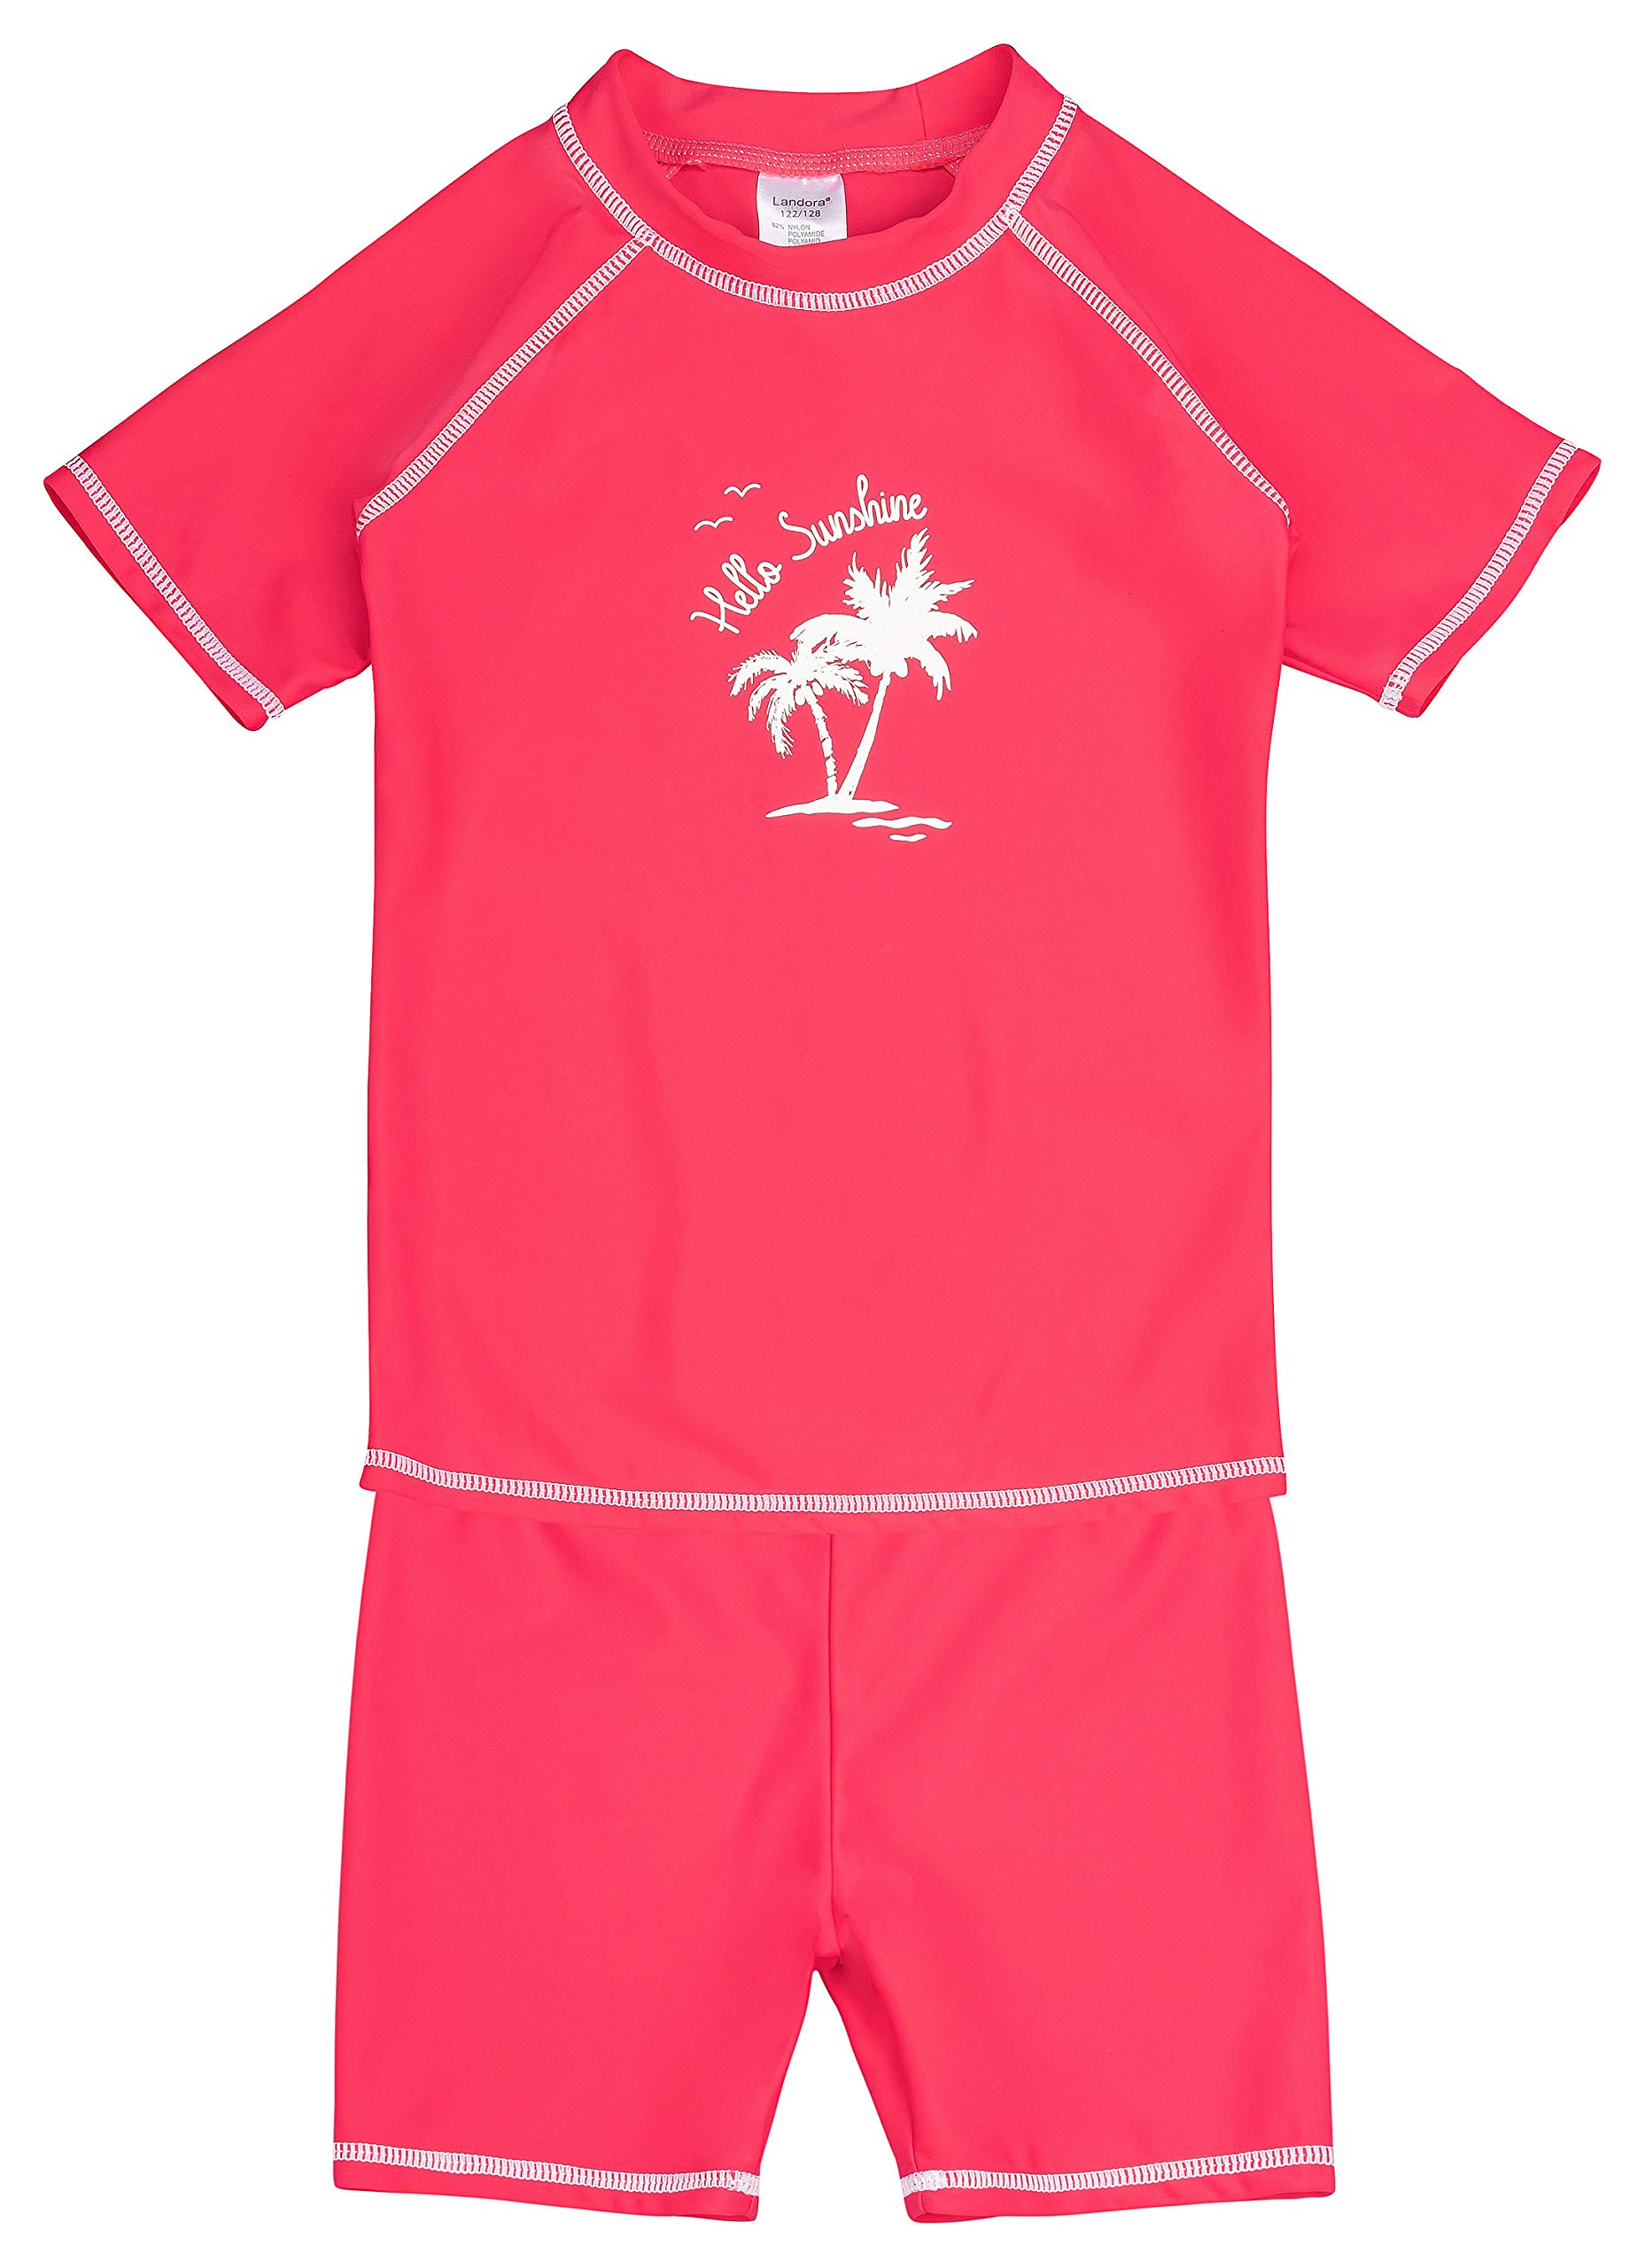 Landora®: Baby- / Kinder-Badebekleidung kurzärmliges 2er Set mit UV-Schutz 50+ und Oeko-Tex 100 Zertifizierung, rot/pink in 86/92